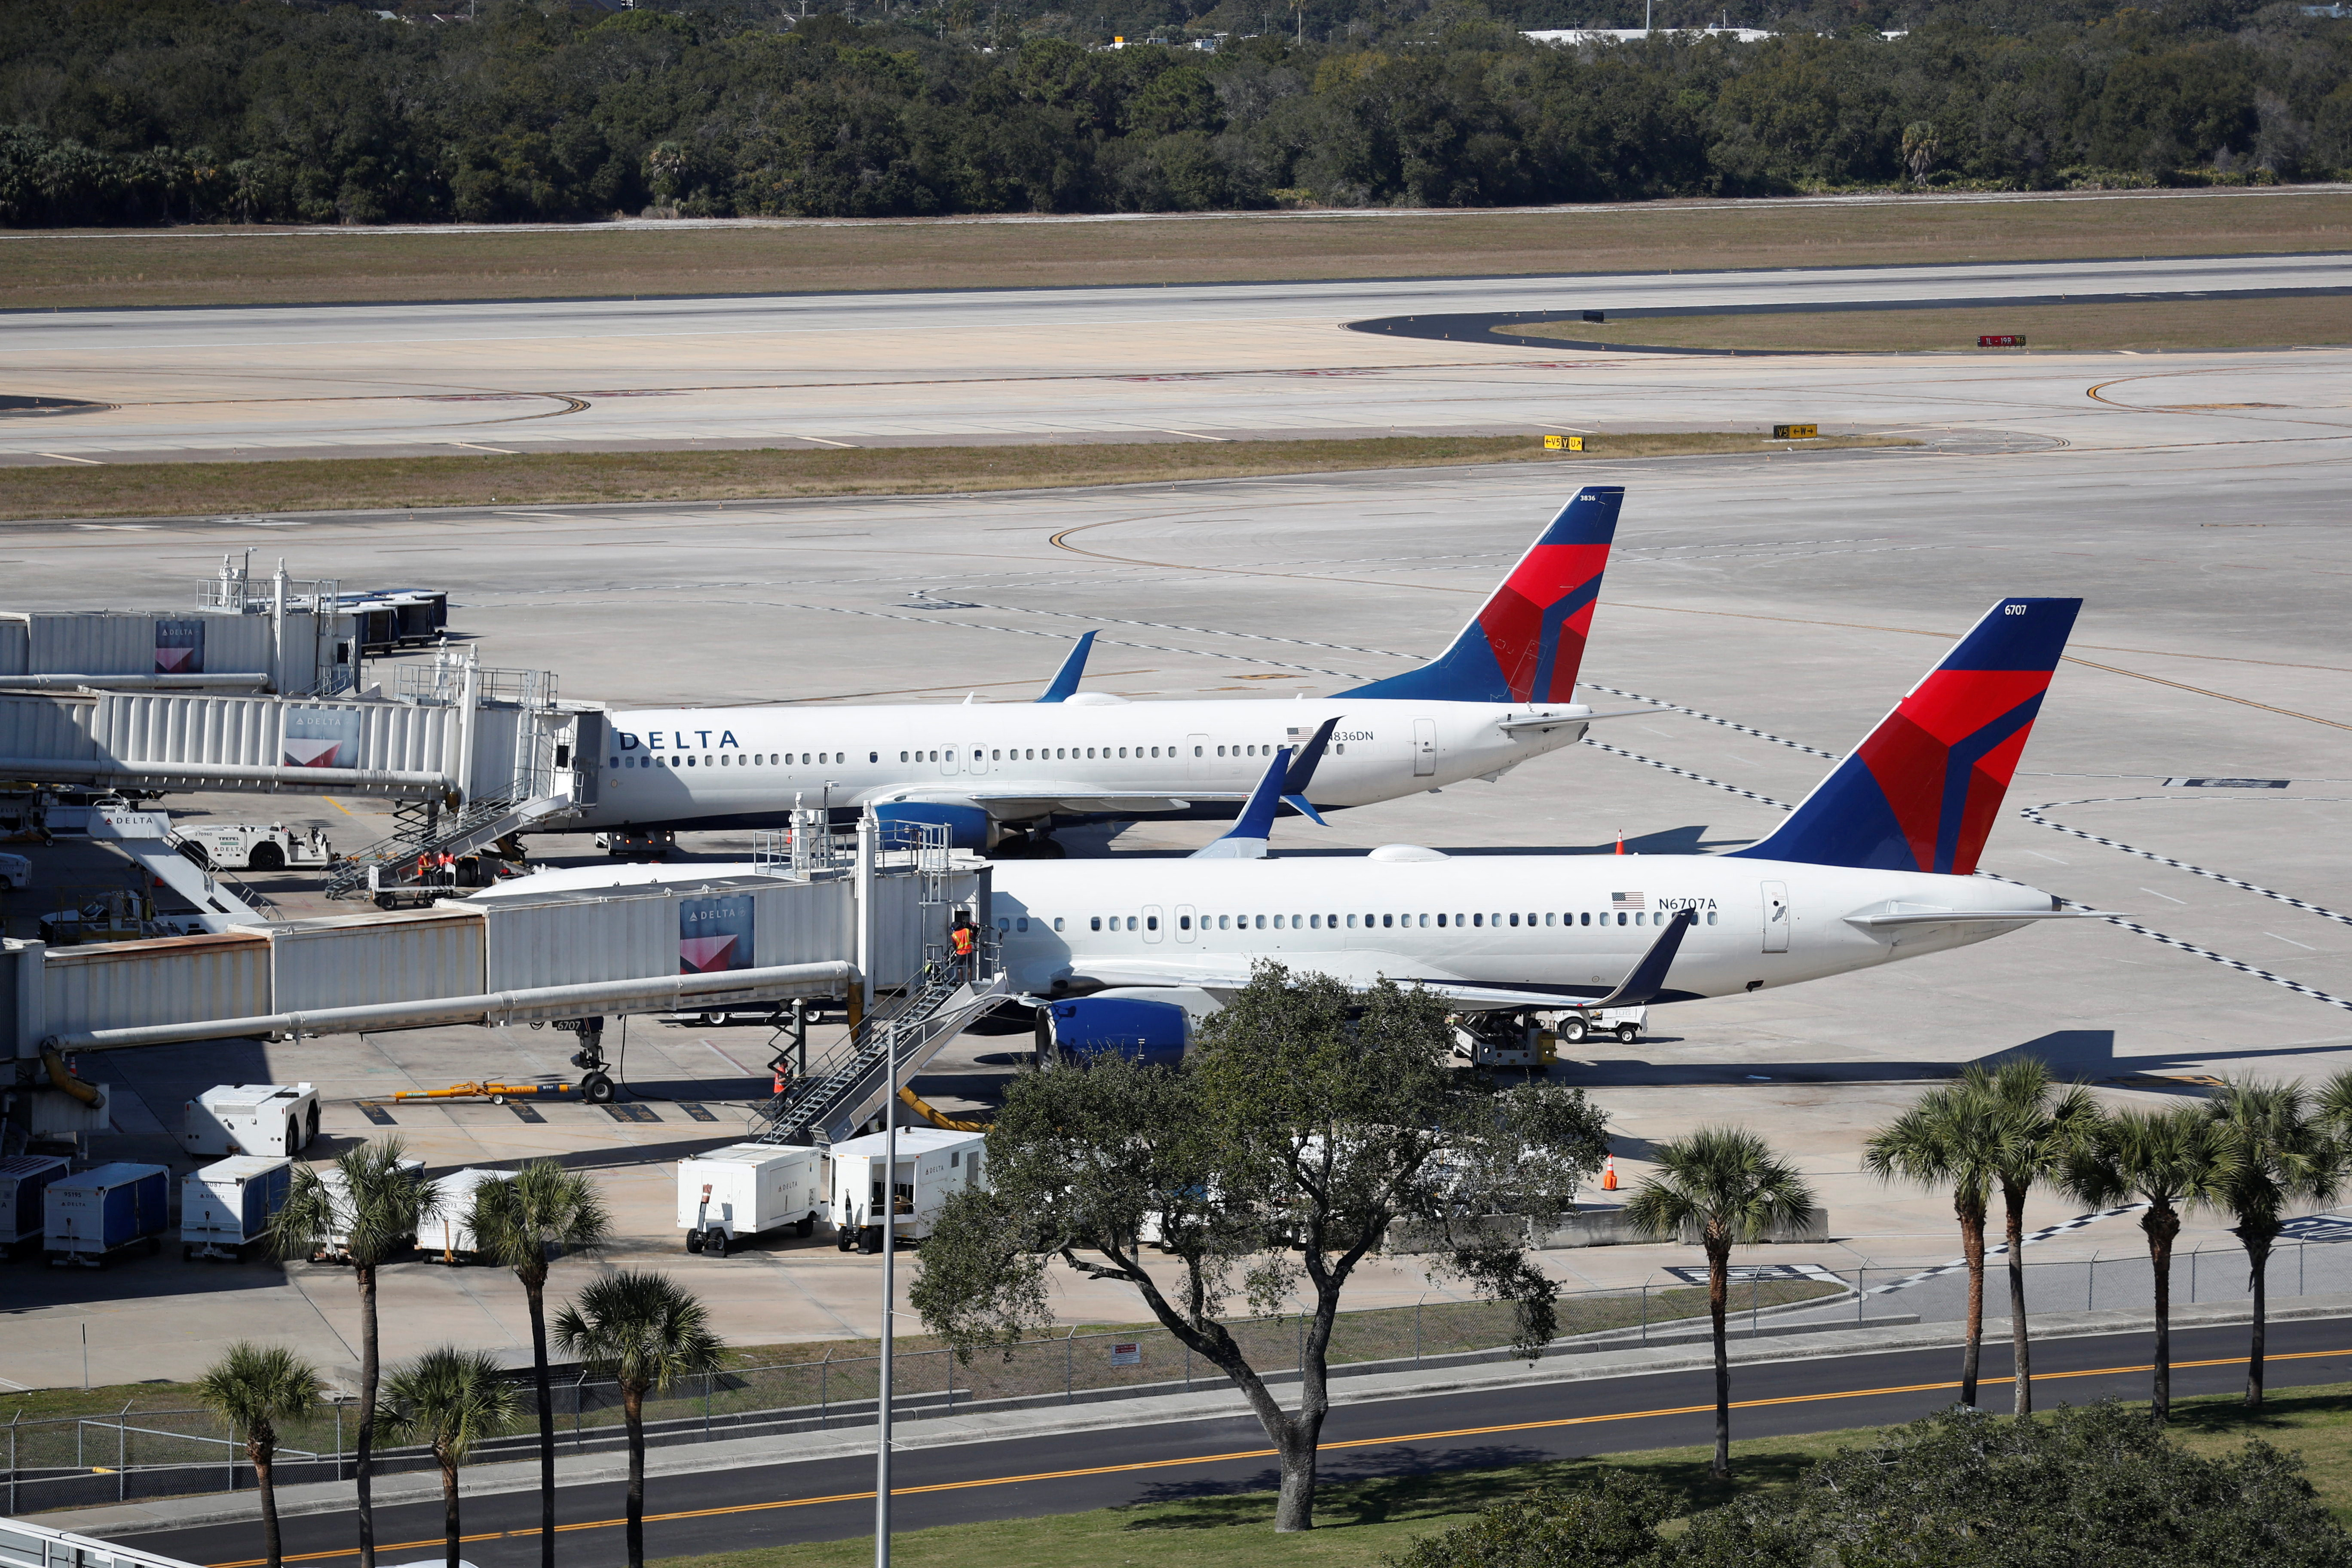 Des avions Delta sont vus à l'aéroport international de Tampa